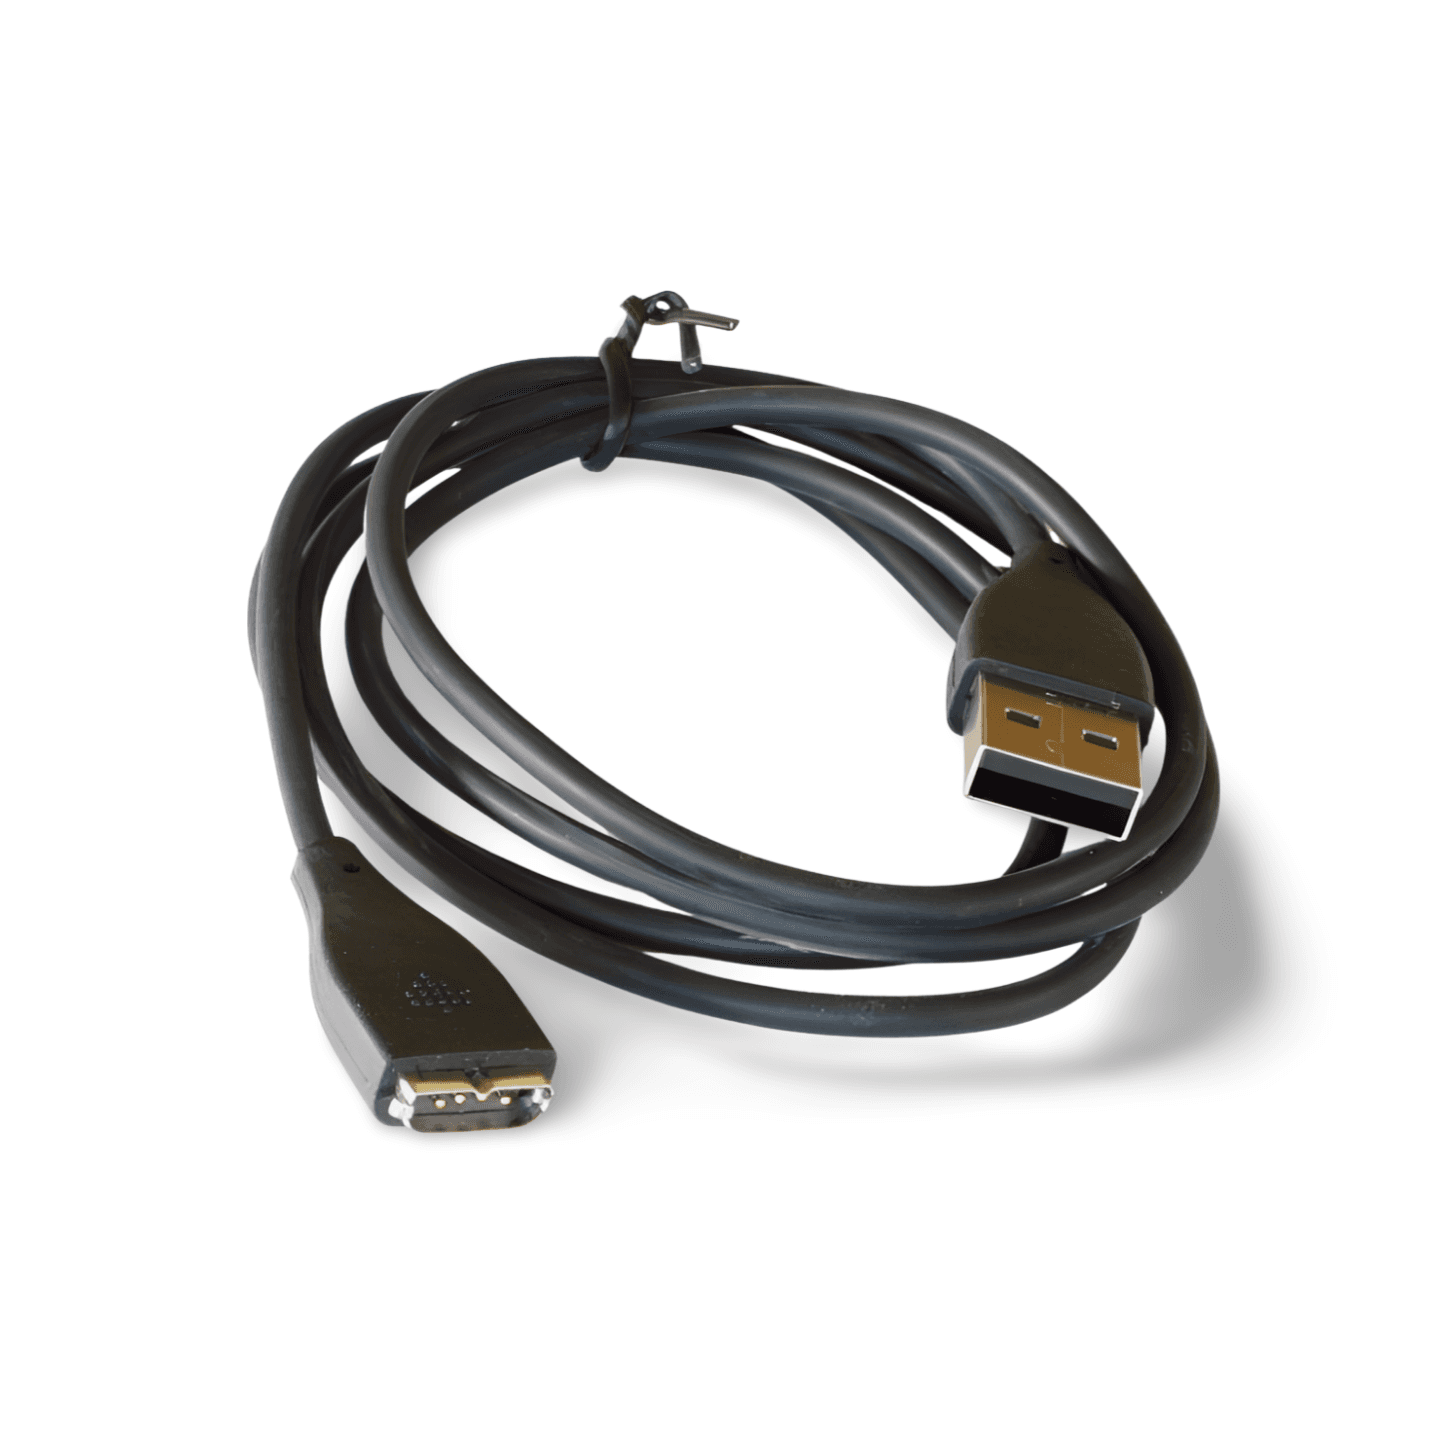 3ft FitBit Surge Cable black